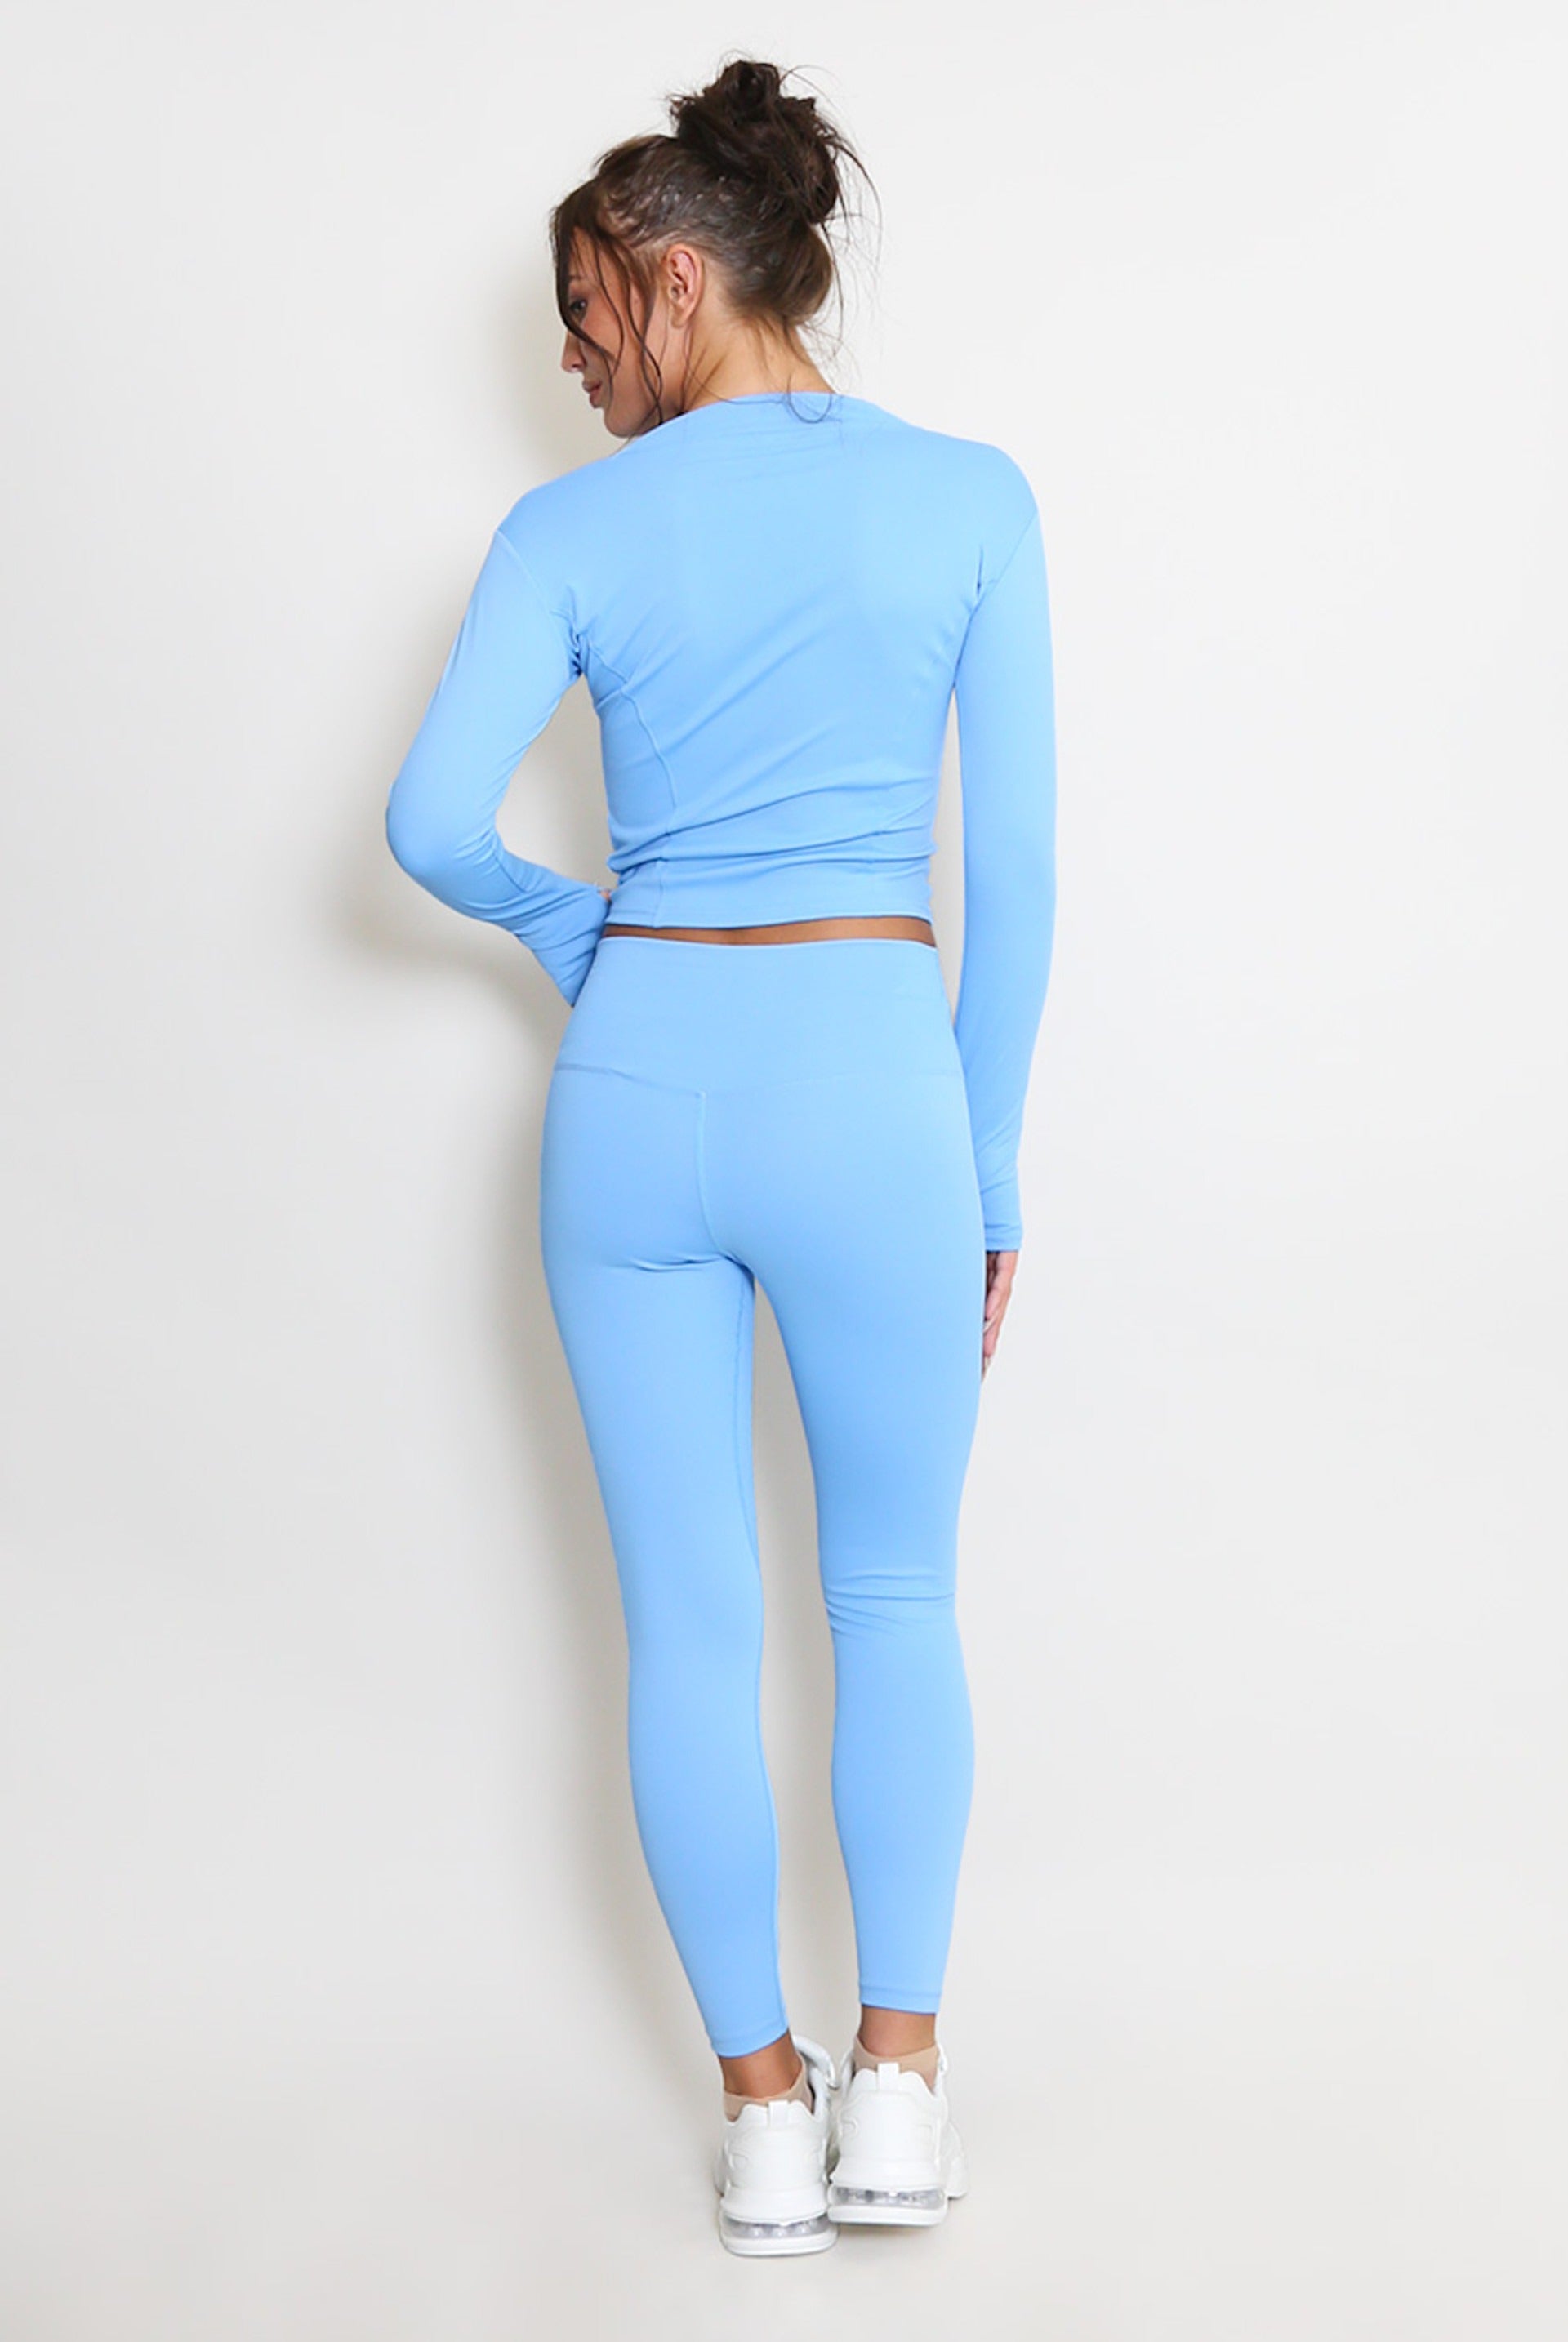 Blue Zip Long Sleeve Top And Legging Energy Gym Set - Sadie